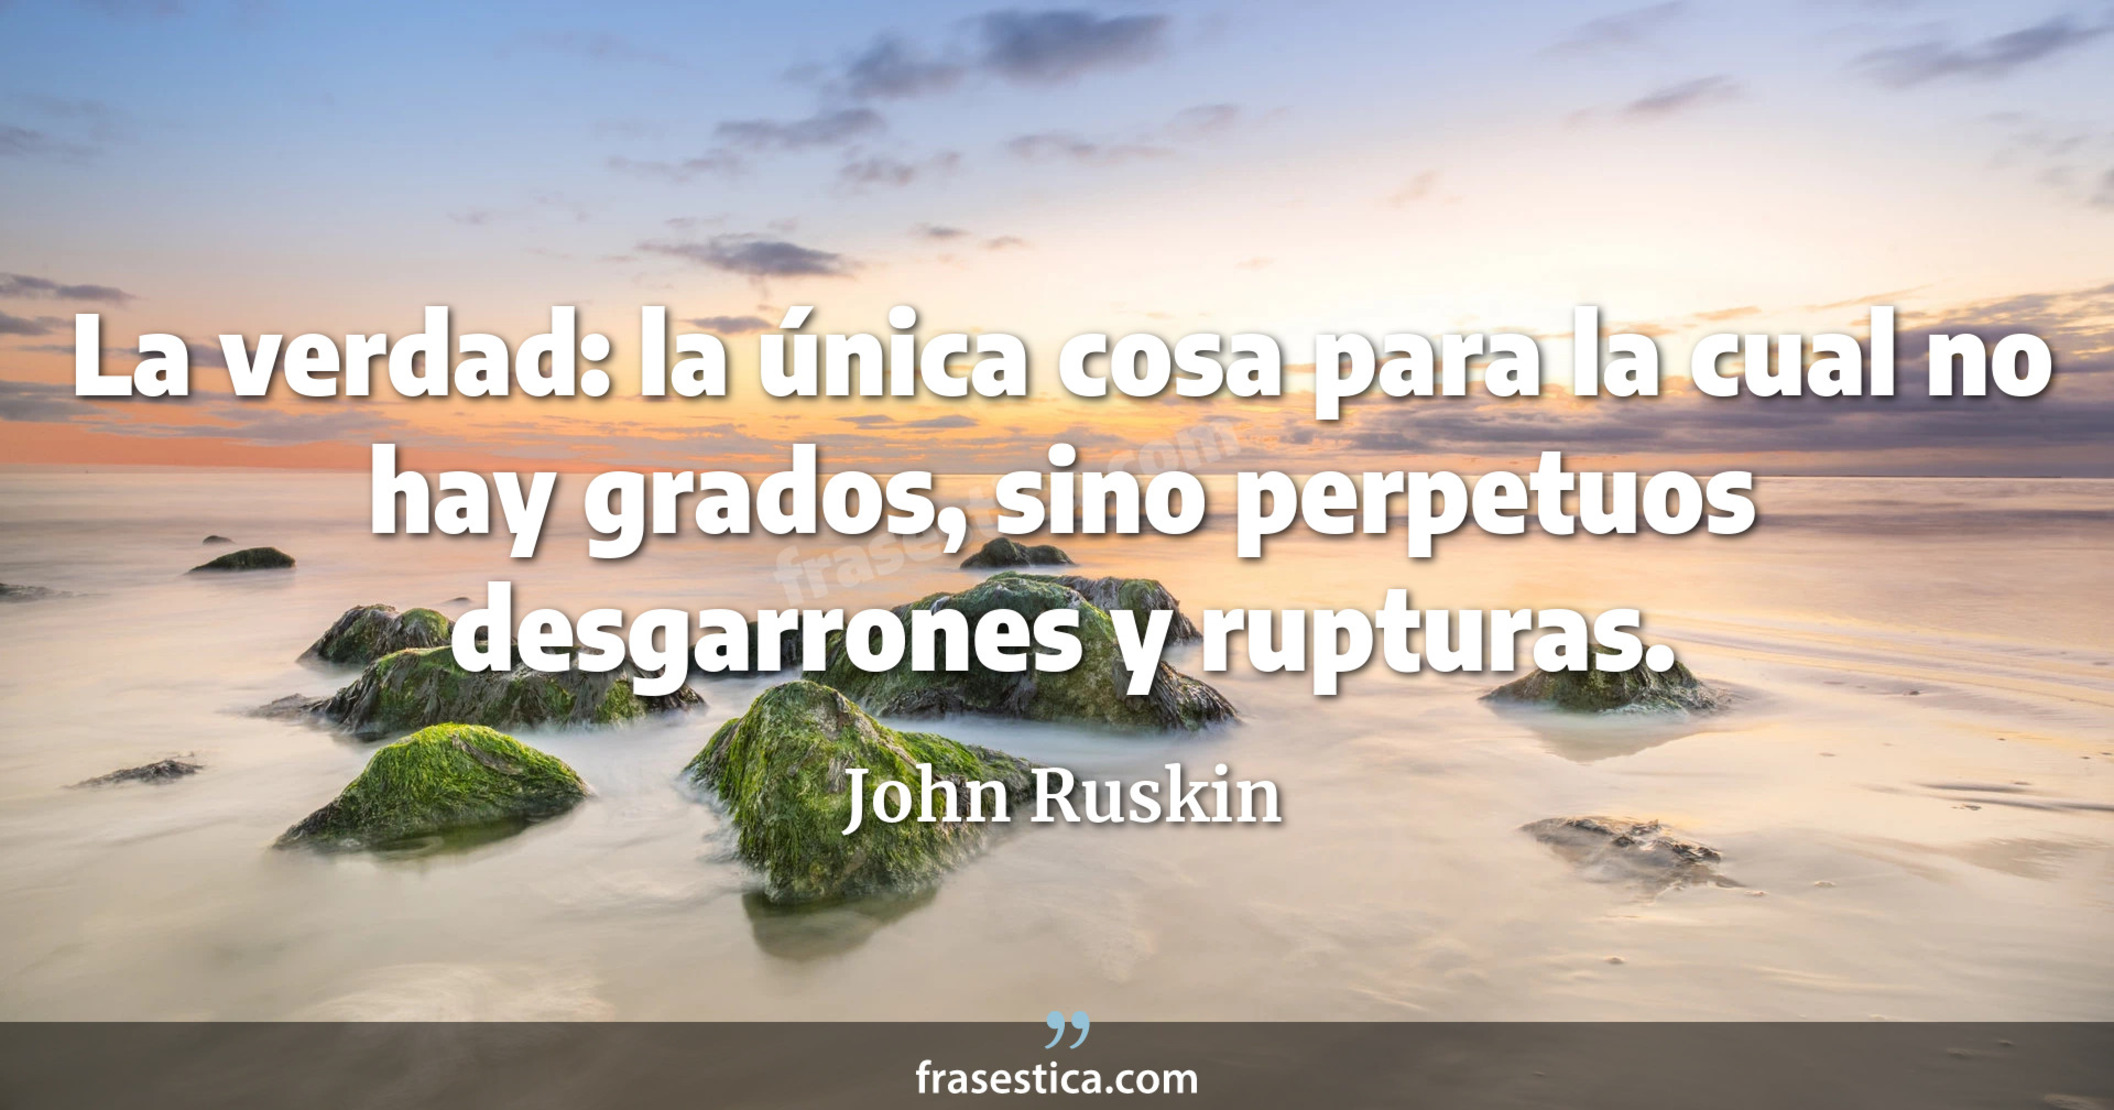 La verdad: la única cosa para la cual no hay grados, sino perpetuos desgarrones y rupturas. - John Ruskin